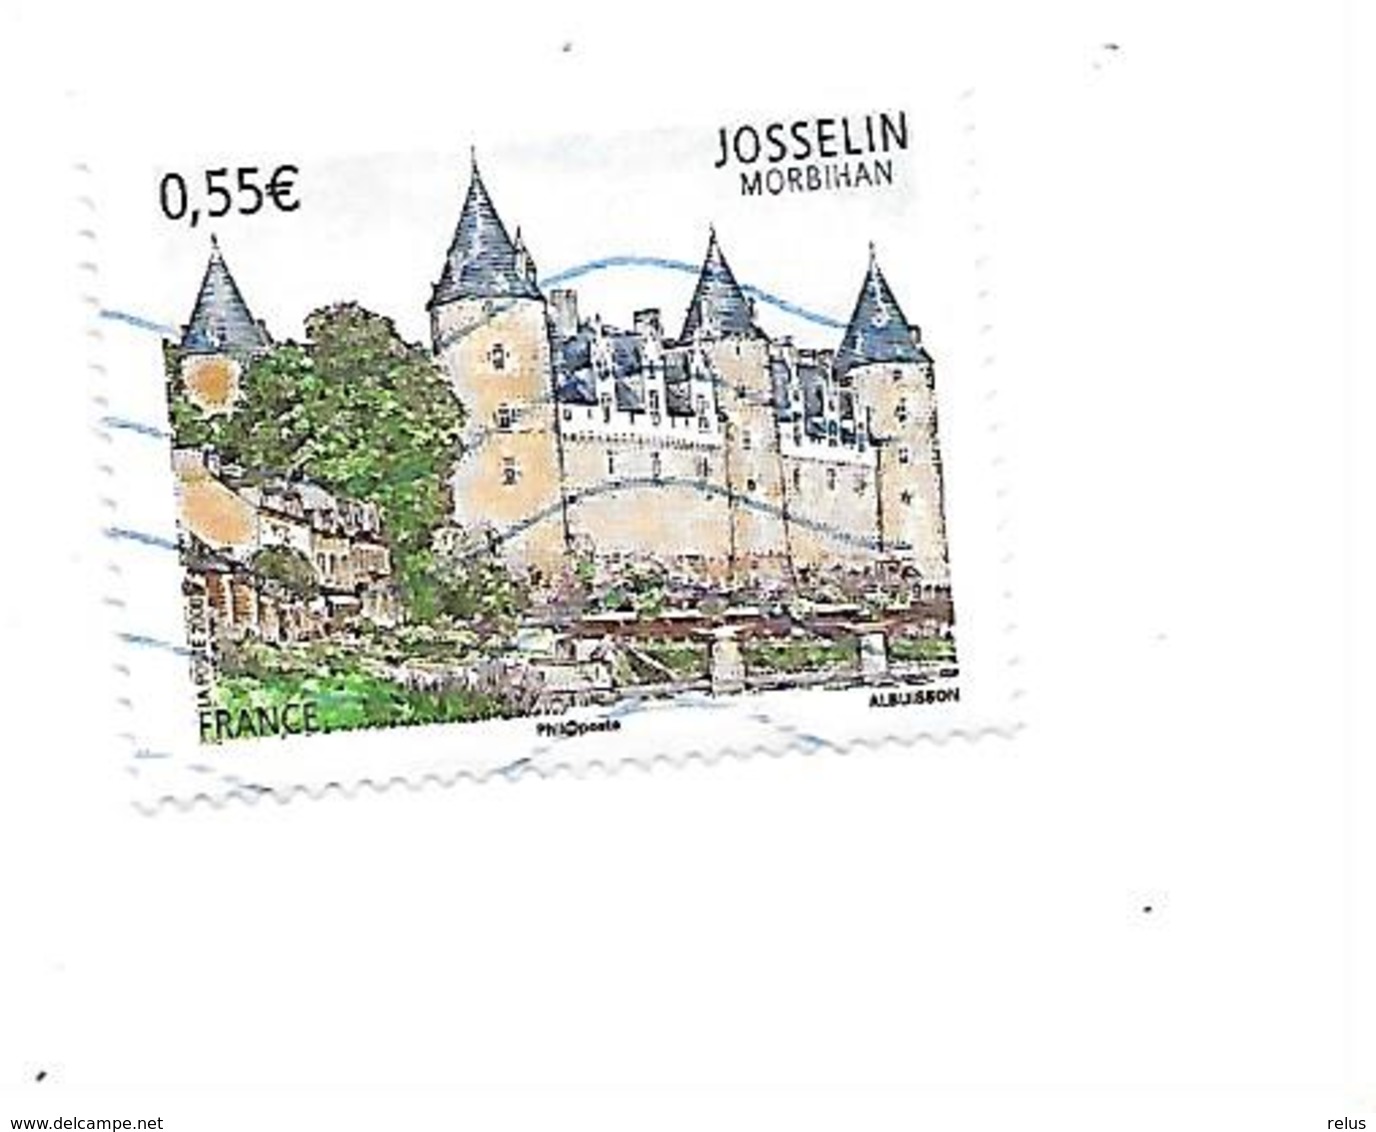 Série Touristique Josselin N°4281 Oblitéré Année 2008 - Oblitérés